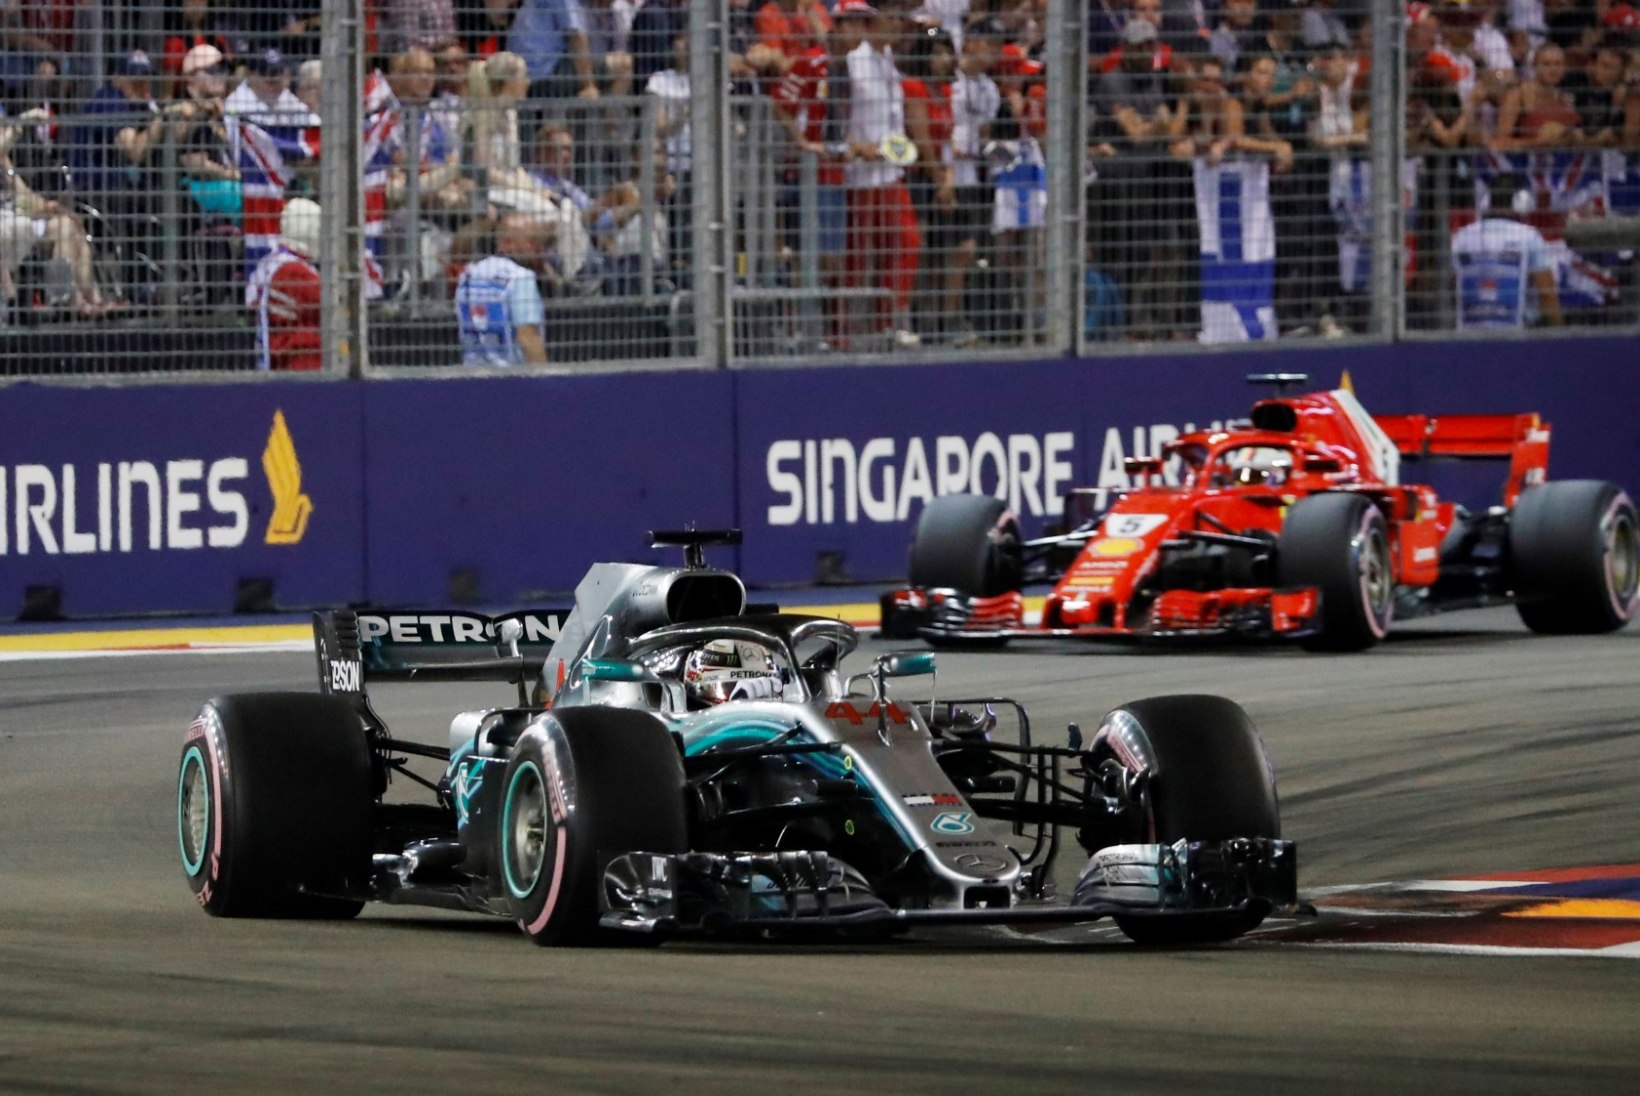 Vääramatult esikohal kihutanud Hamilton kasvatas taktikaga puusse pannud Vetteli ees edu veelgi